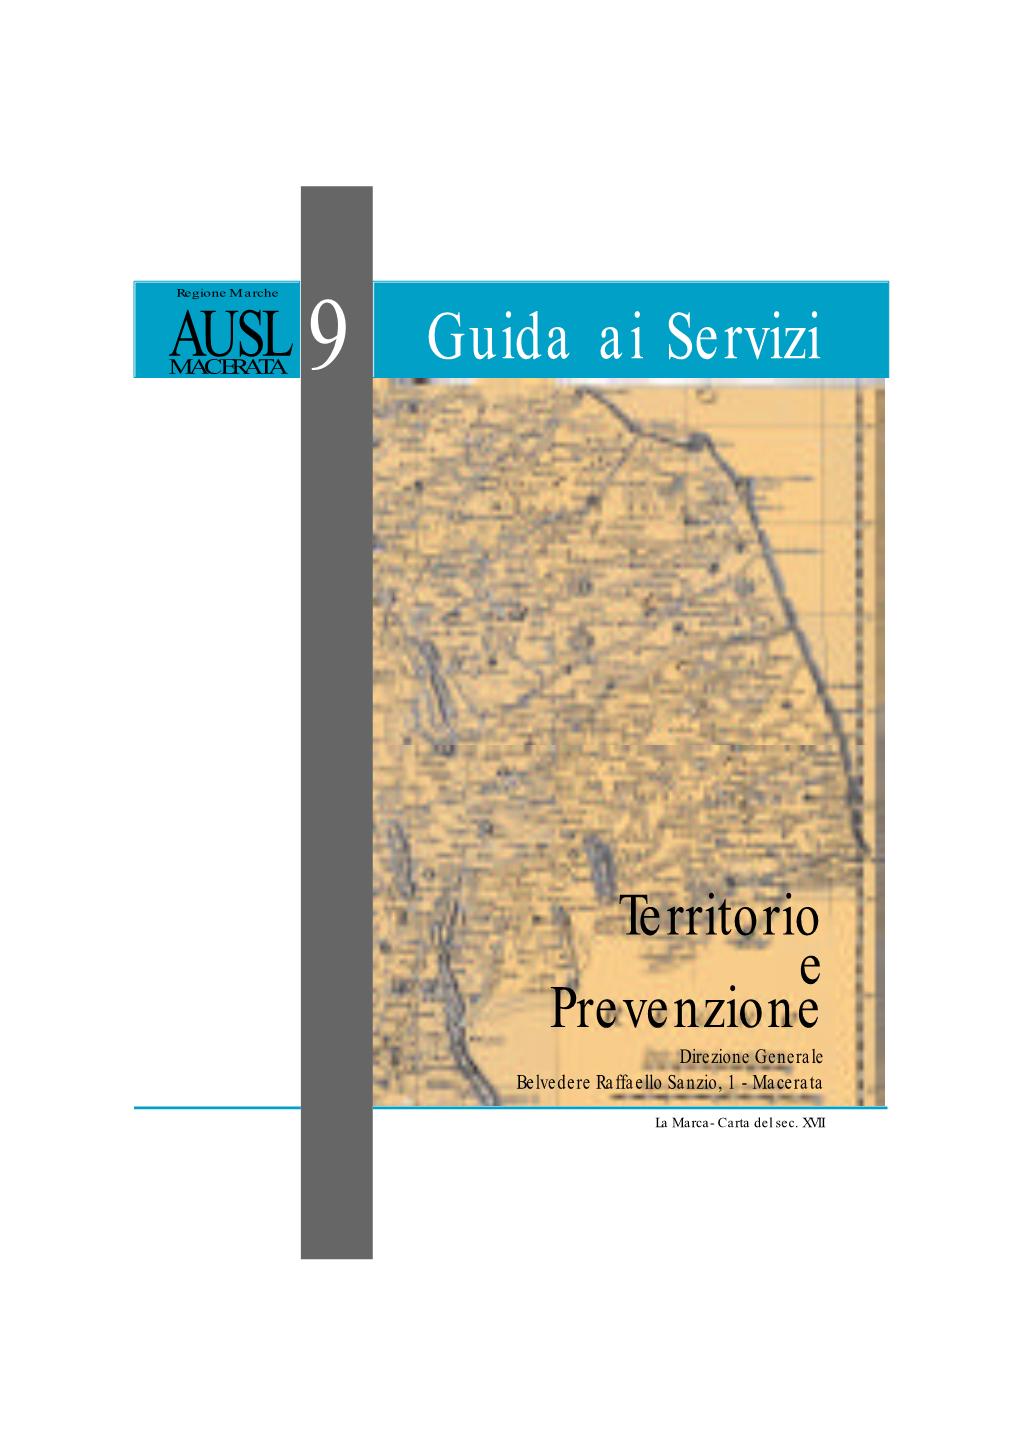 Territorio E Prevenzione Direzione Generale Belvedere Raffaello Sanzio, 1 - Macerata